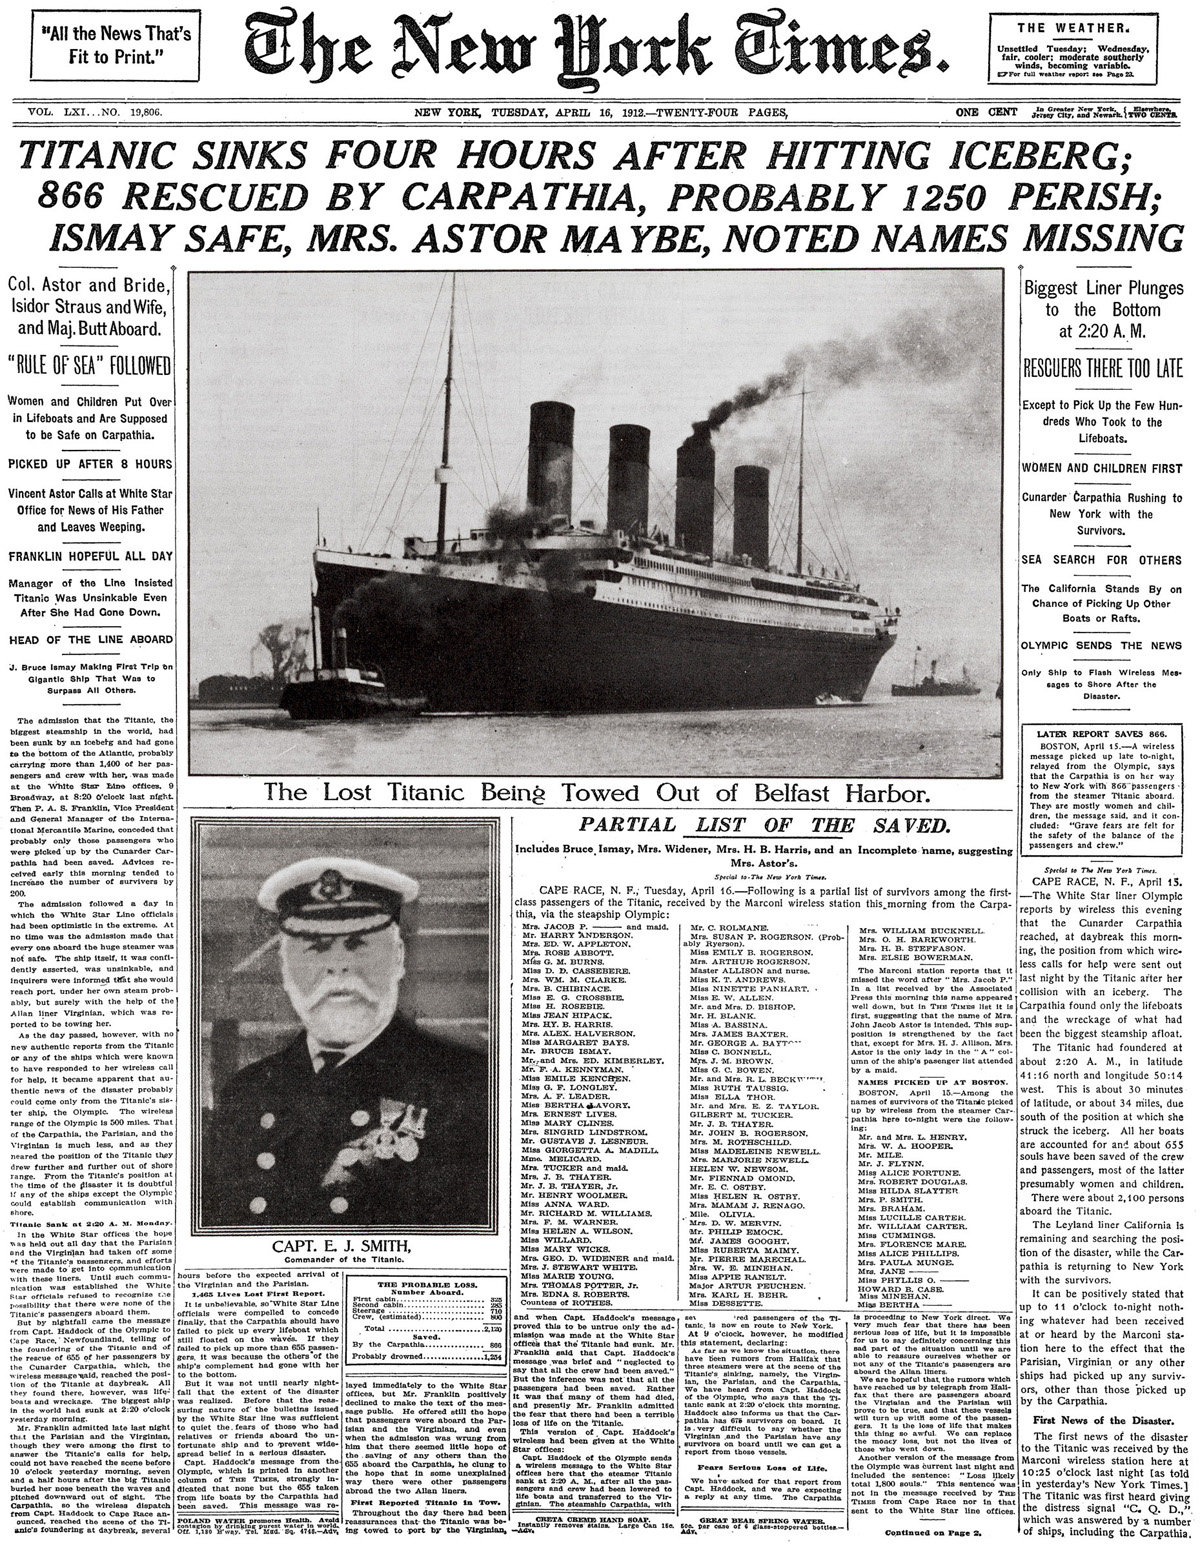 titanic-the-news-stor-torrjpg-cefe735bb8efe691.jpg